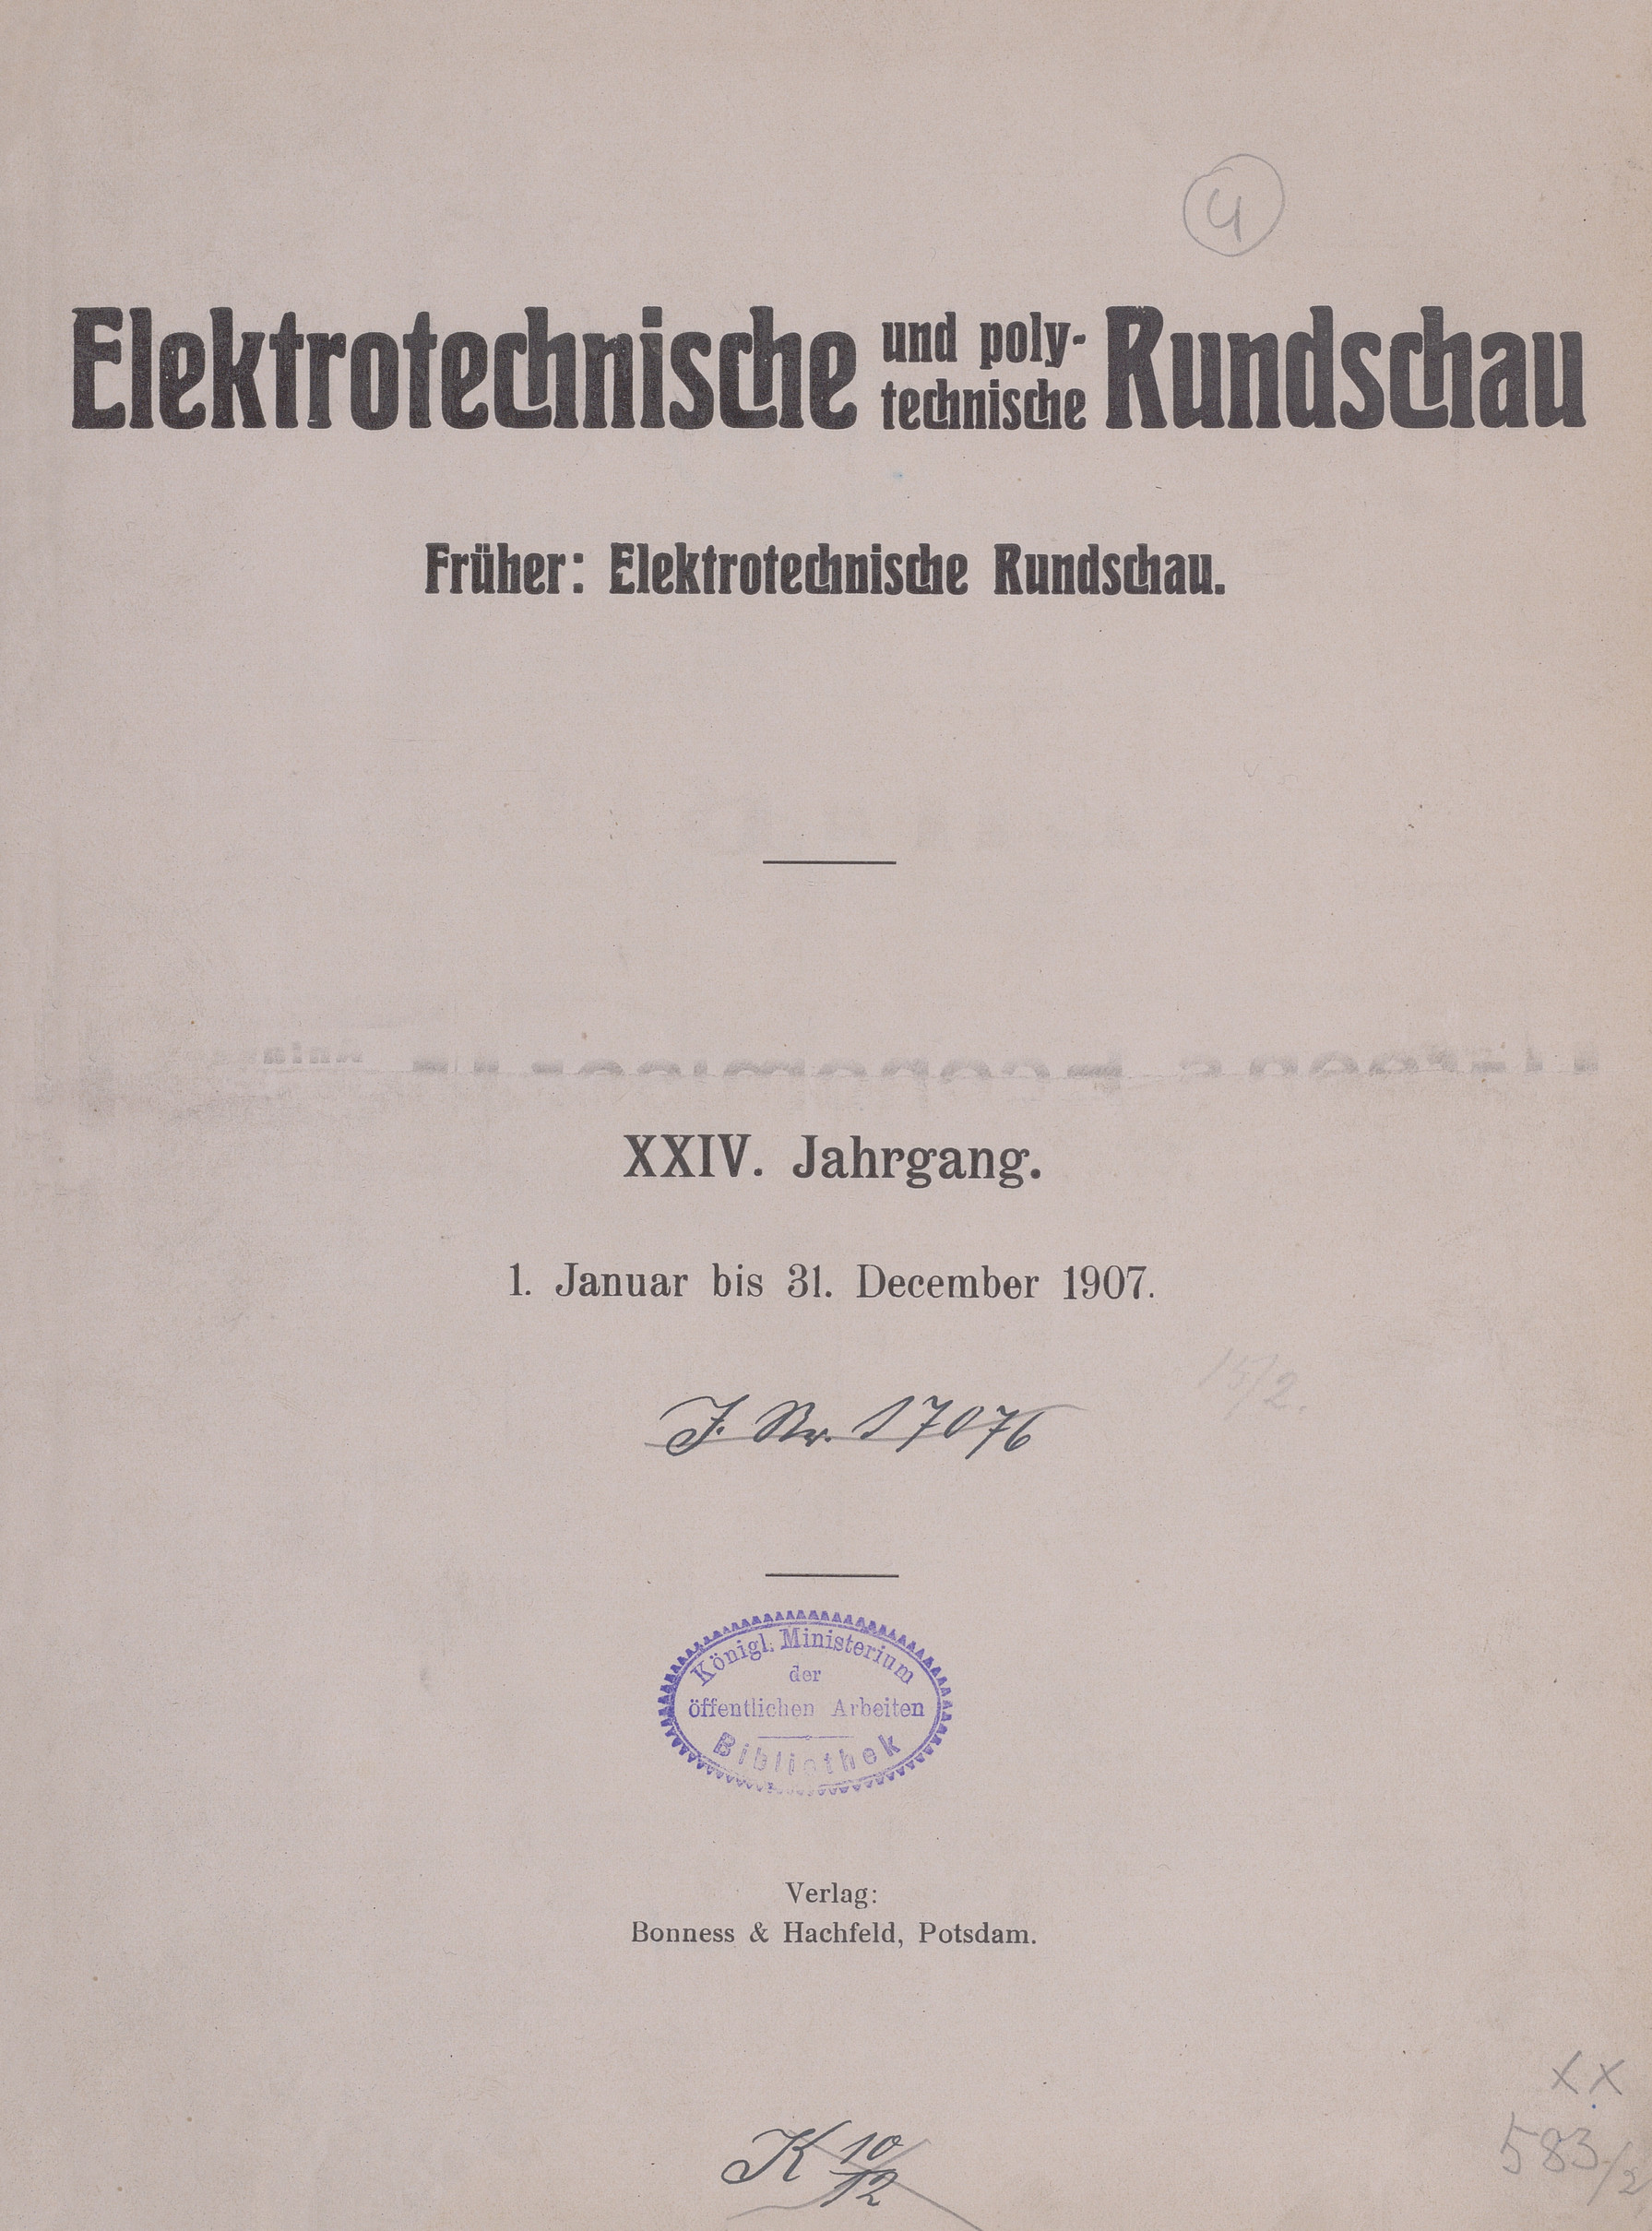 Elektrotechnische und polytechnische Rundschau, 1907, Index